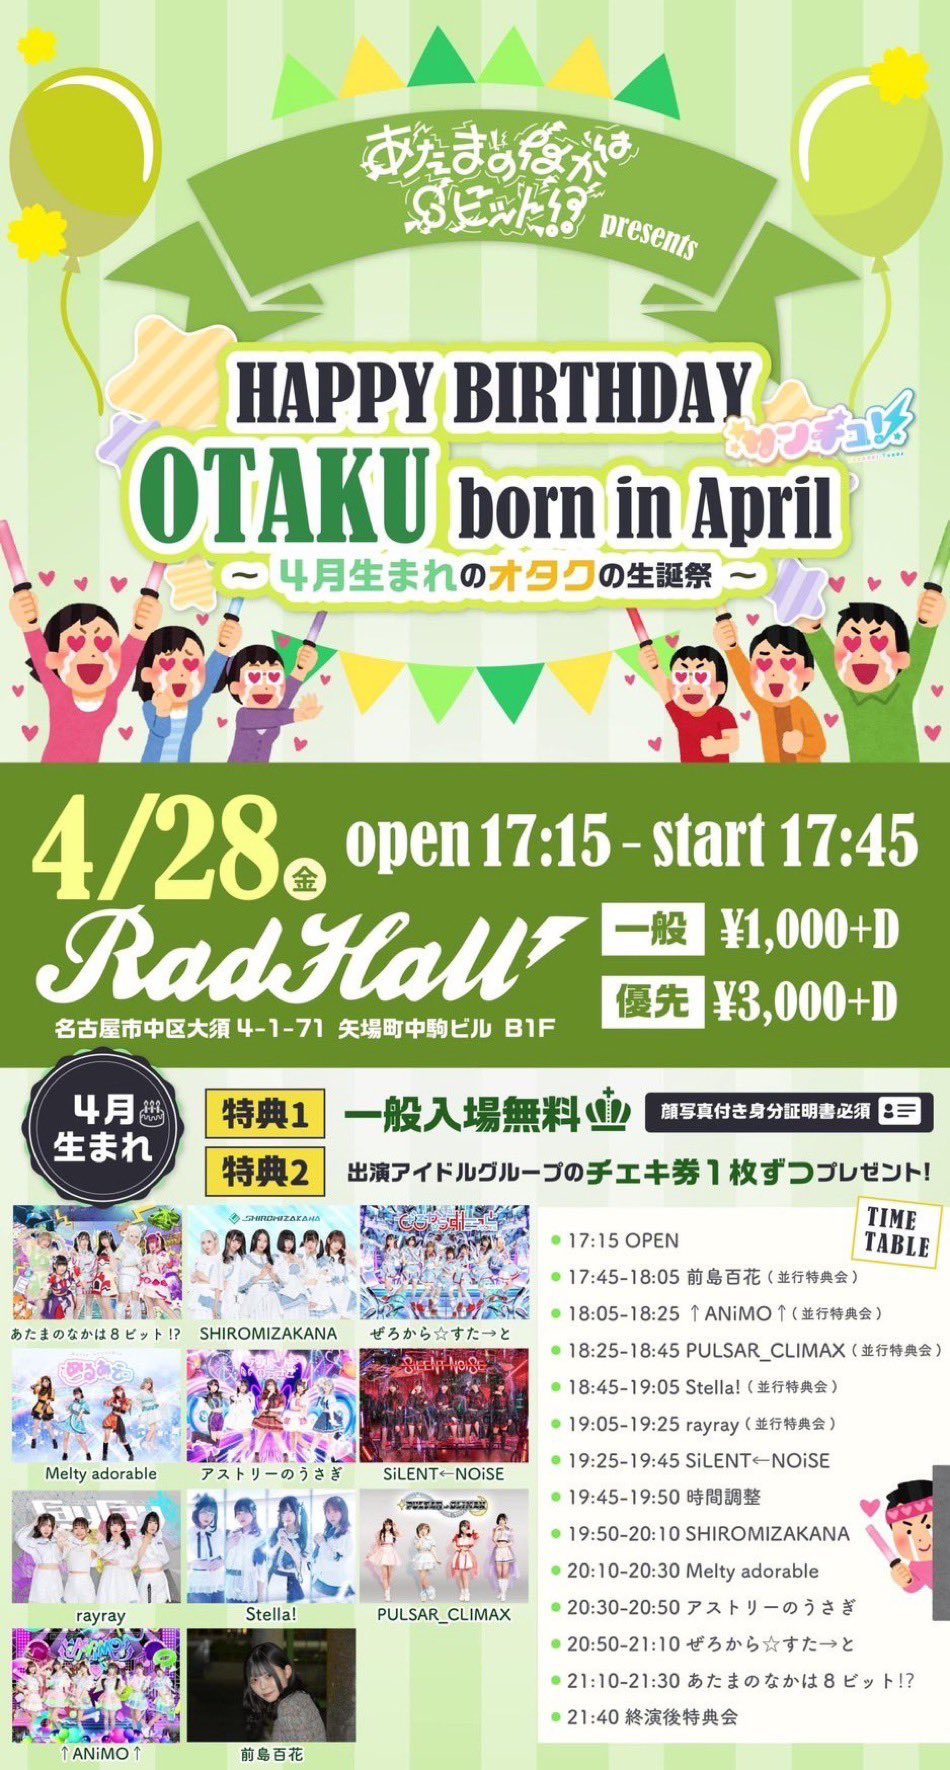 あたまのなかは8ビット!?pre. HAPPY BIRTHDAY OTAKU born in April